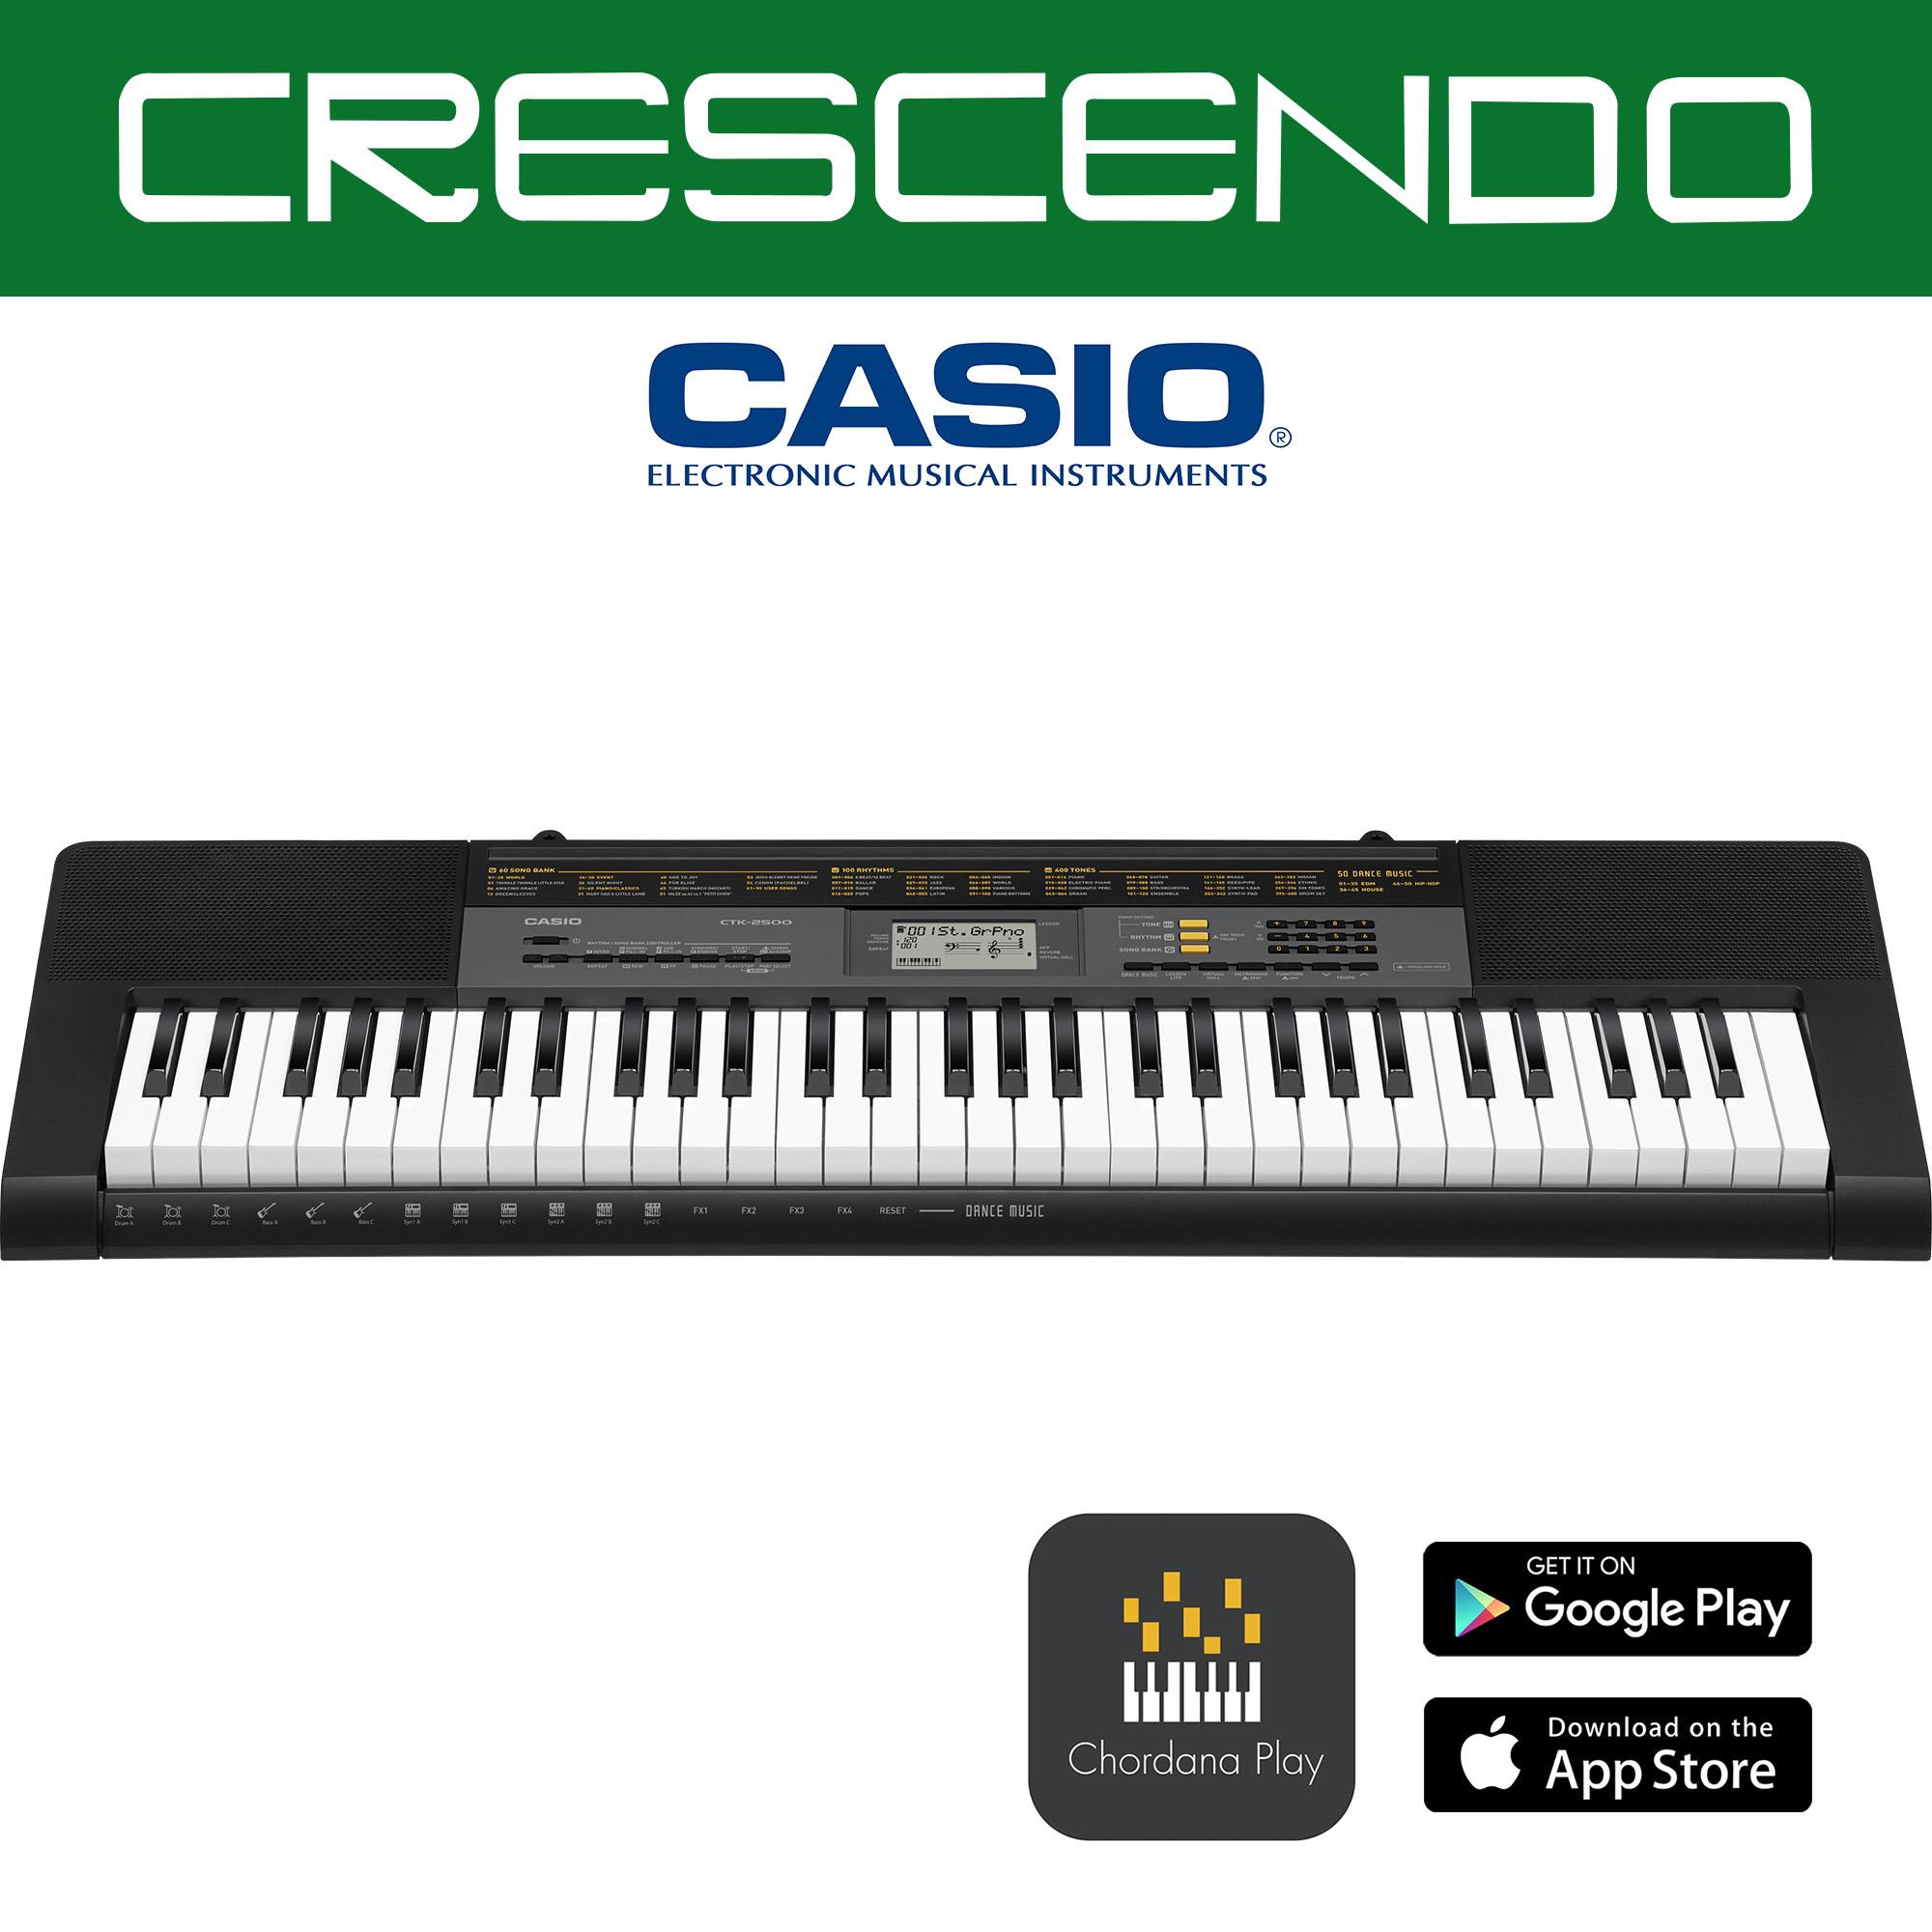 casio keyboard indian rhythms download